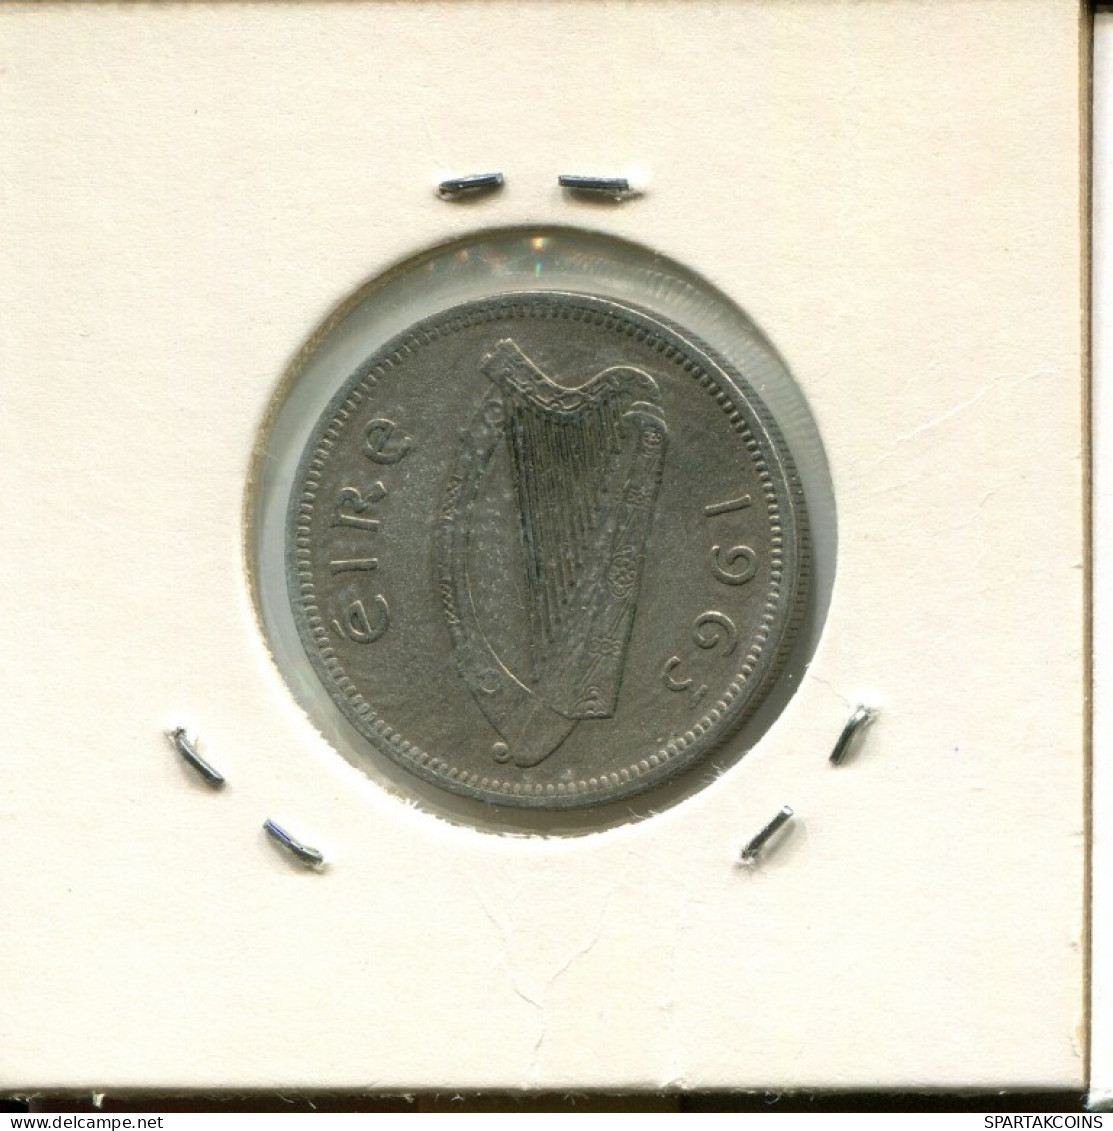 1 SHILLING 1963 IRLAND IRELAND Münze #AN630.D.A - Irlande